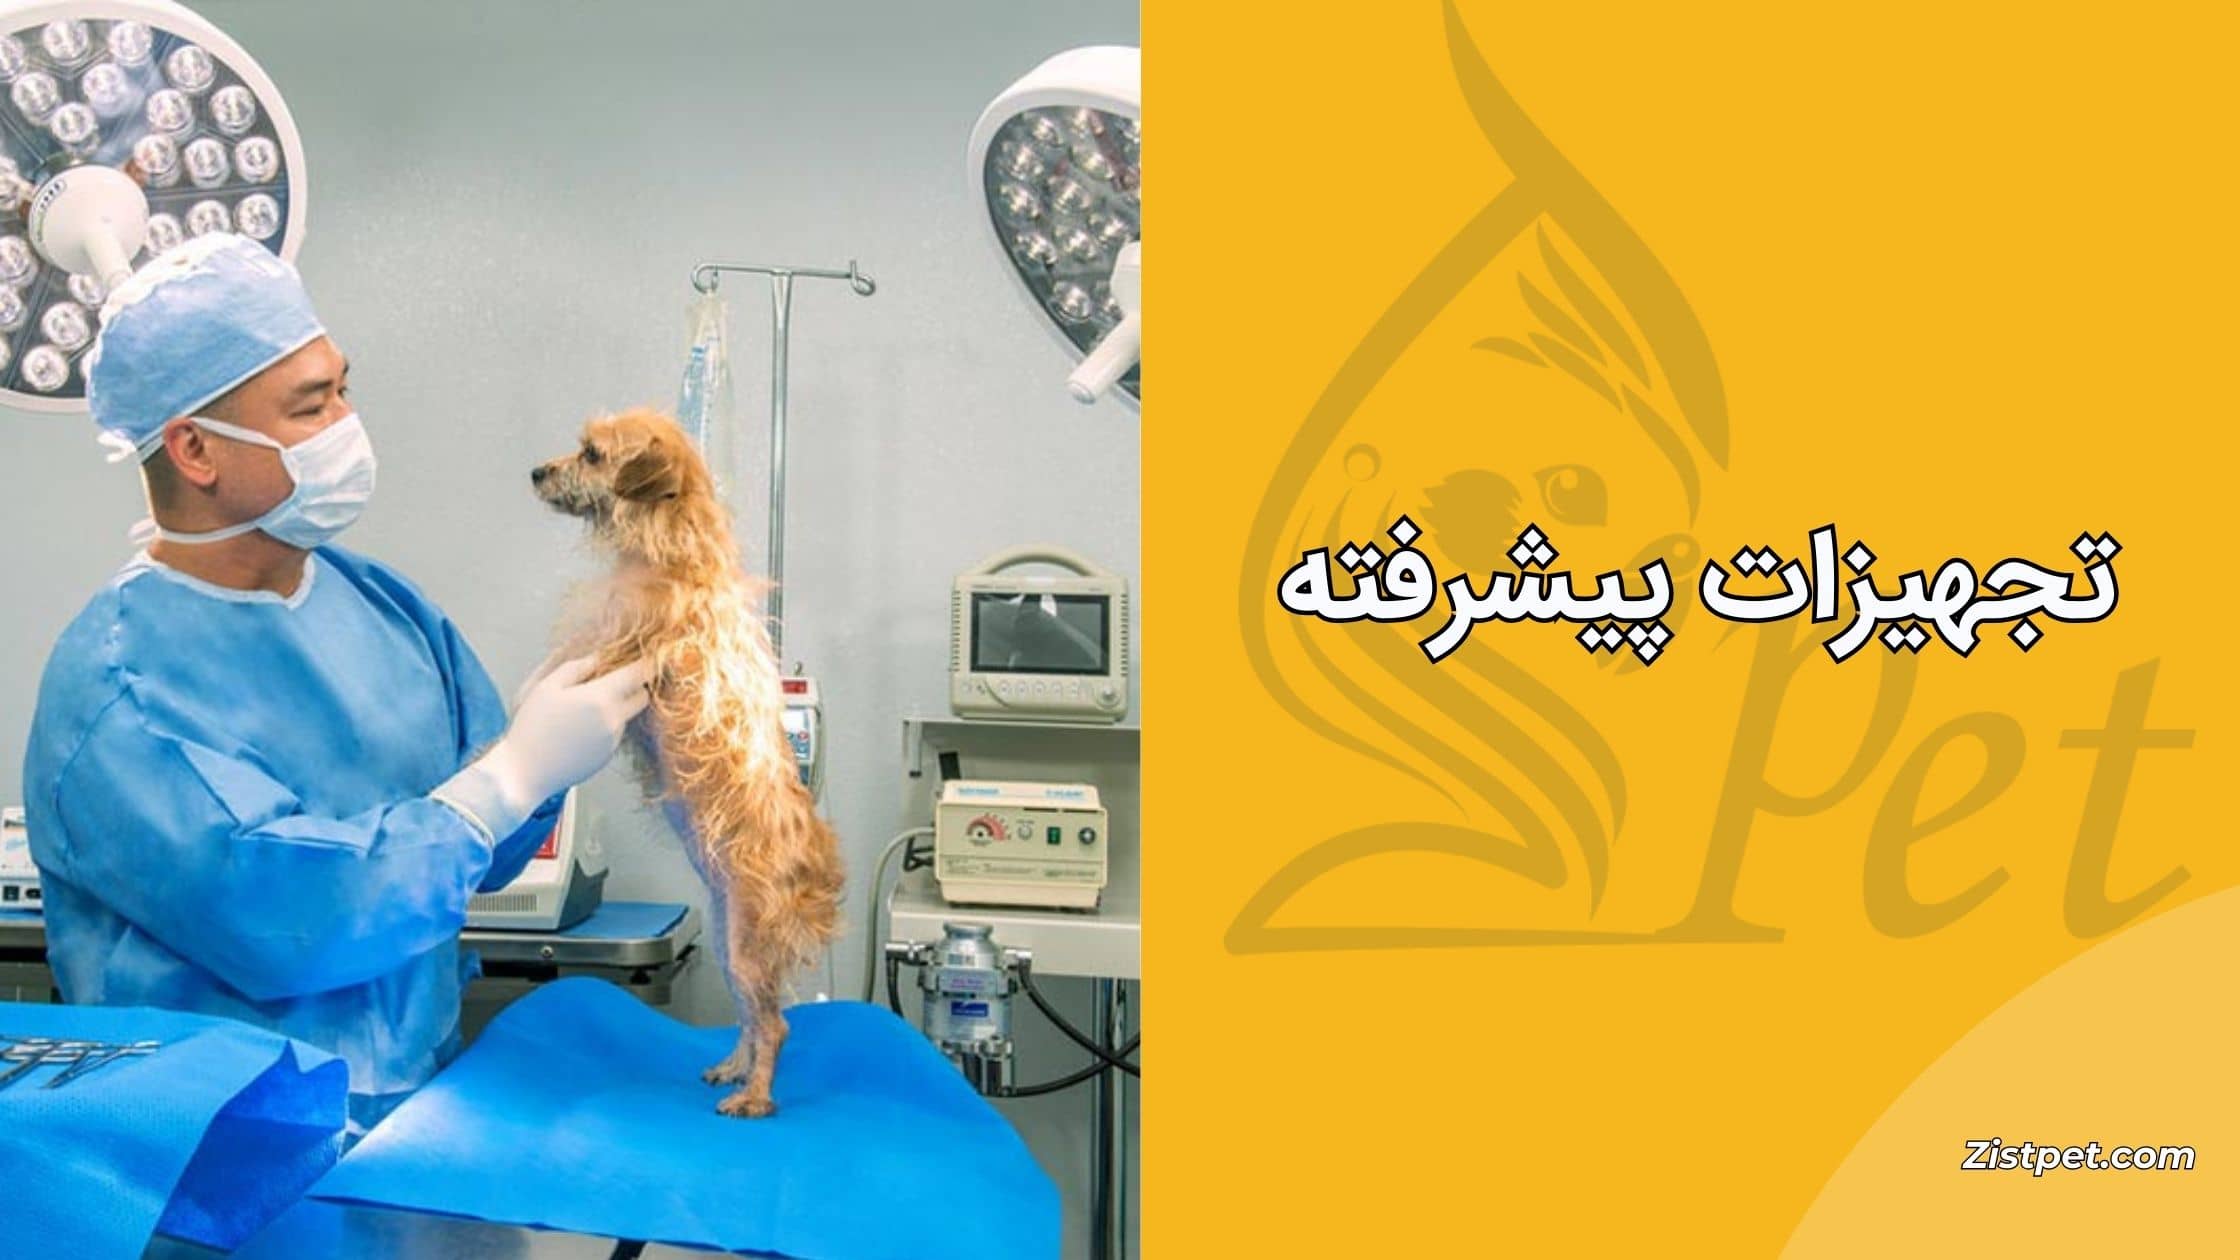 دامپزشکان تهران دارای تجهیزات درمانی پیشرفته